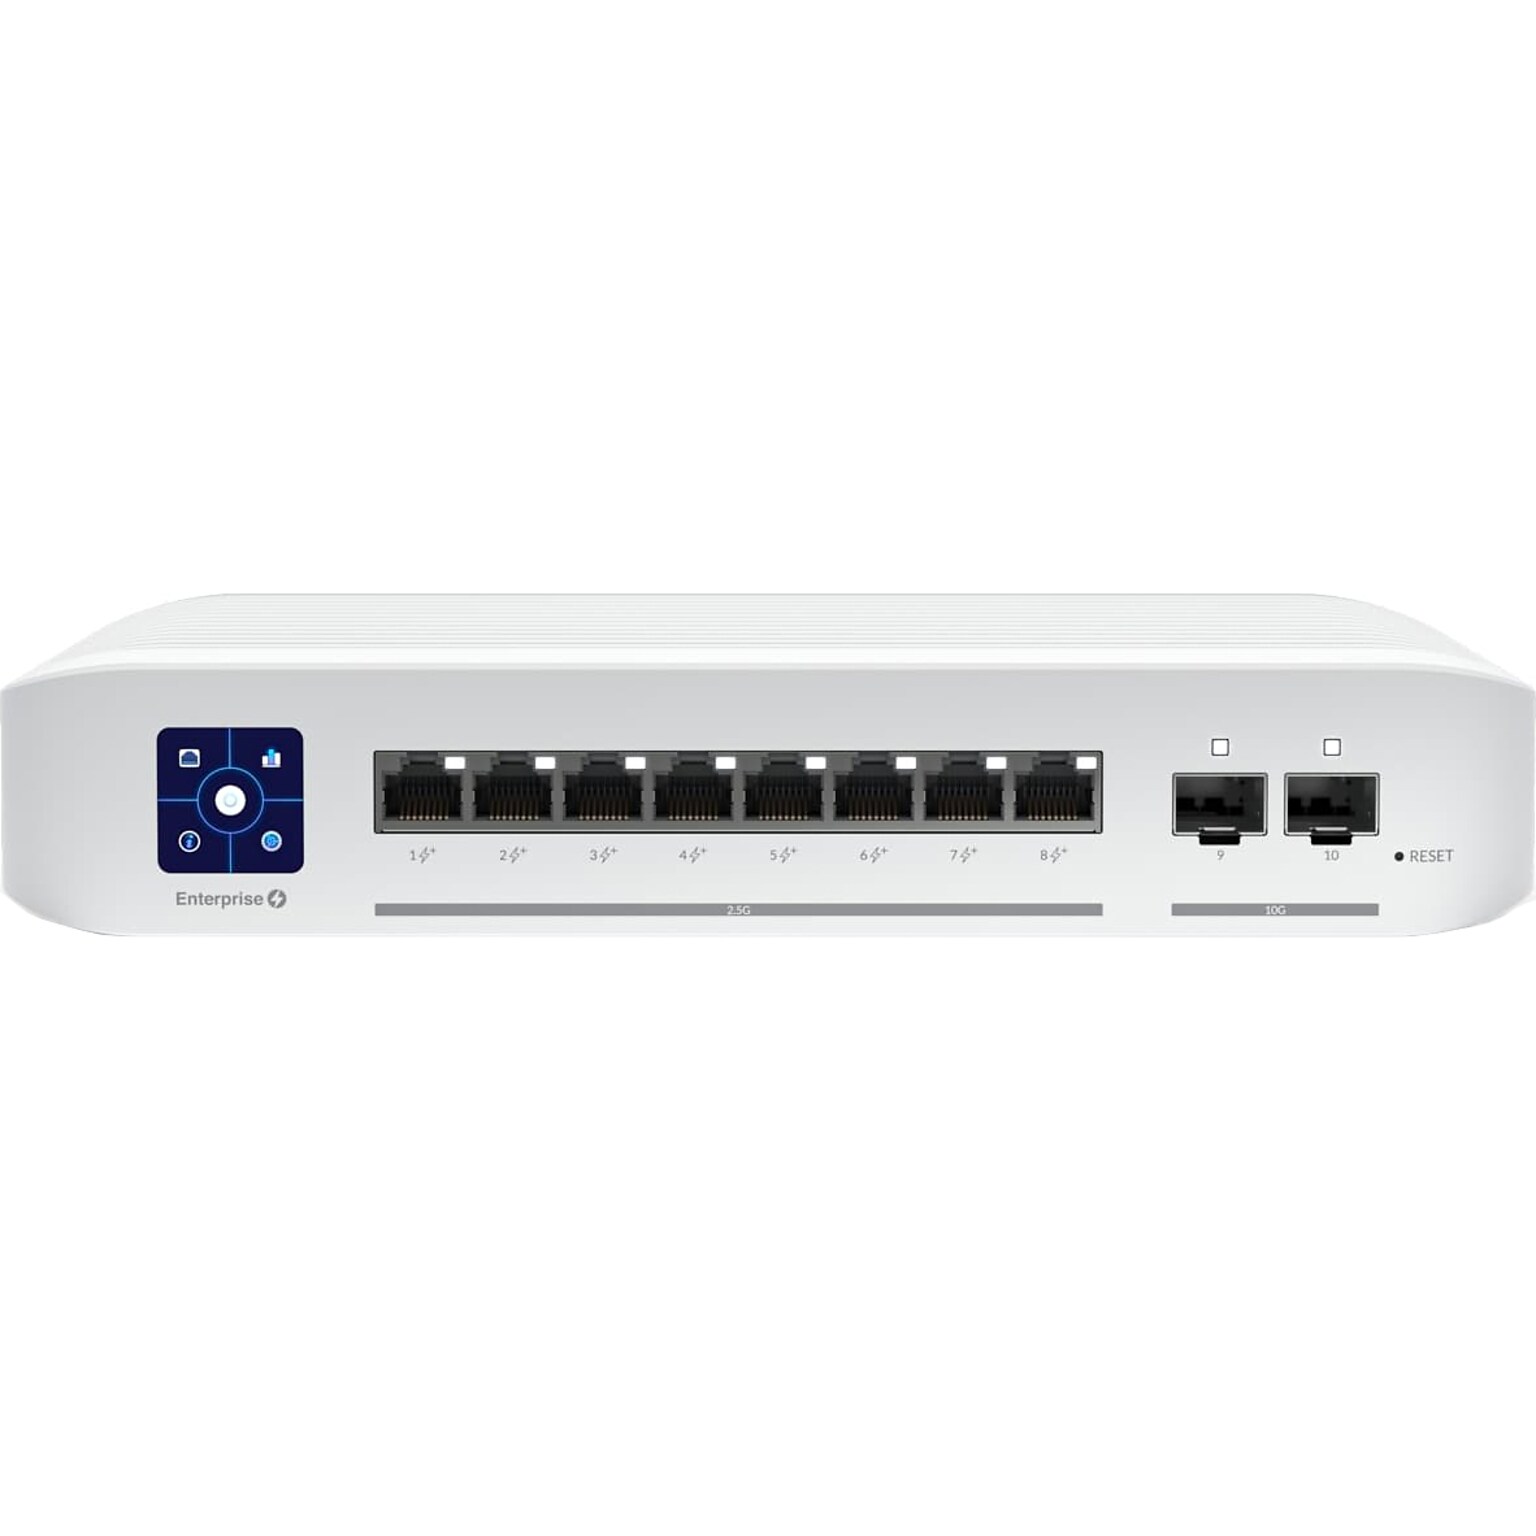 Ubiquiti UniFi Enterprise 8-Port Gigabit Ethernet PoE Managed Switch, White (USW-ENTERPRISE-8-POE)